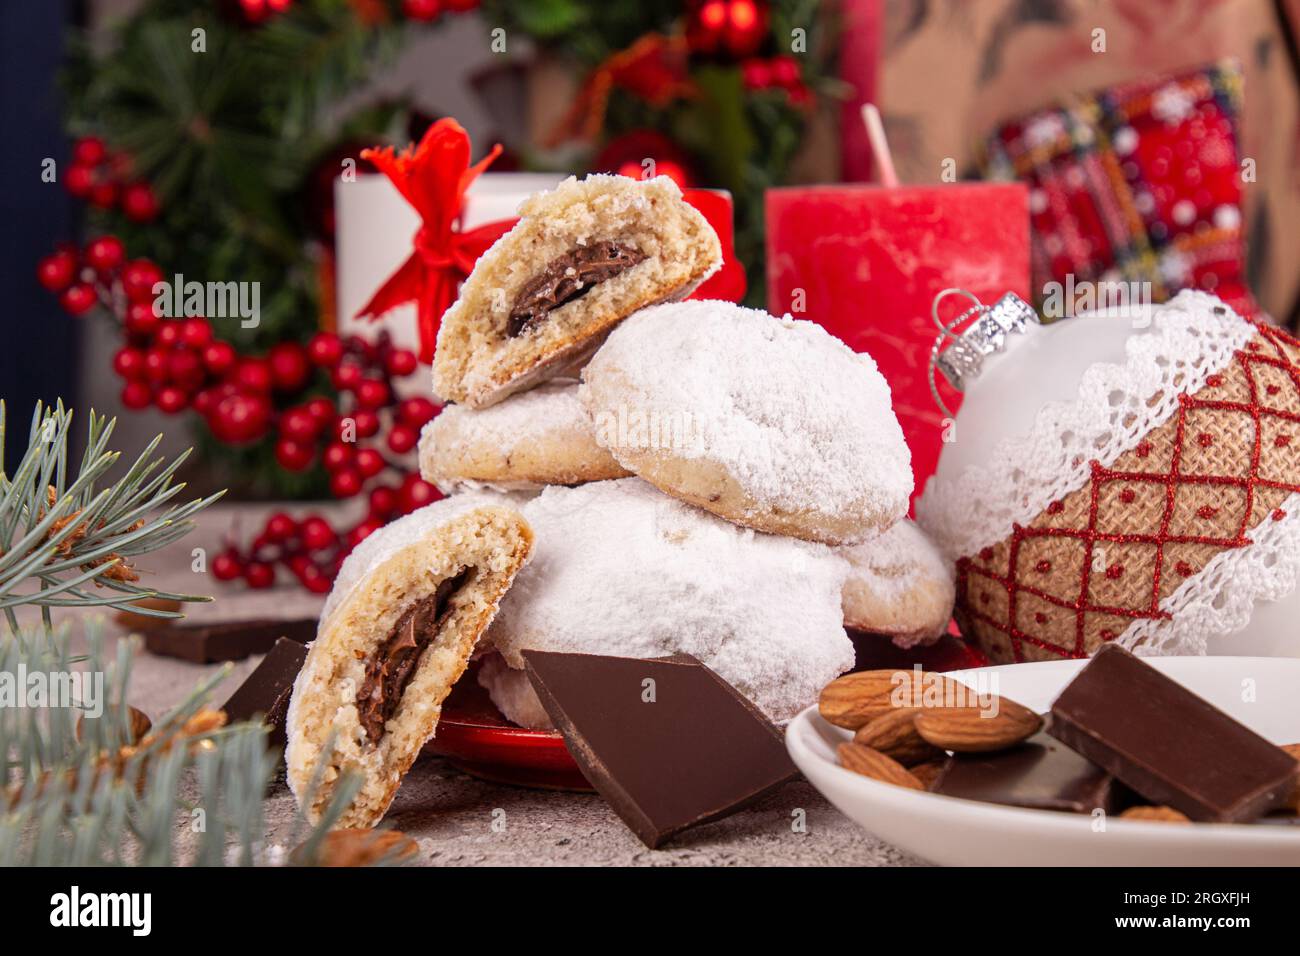 Biscuits de Noël traditionnels biscuits boules de neige recouvert de sucre glace en poudre avec noix d'amande farcie de chocolat nutella. Russian Tea Cakes, mexicain Banque D'Images